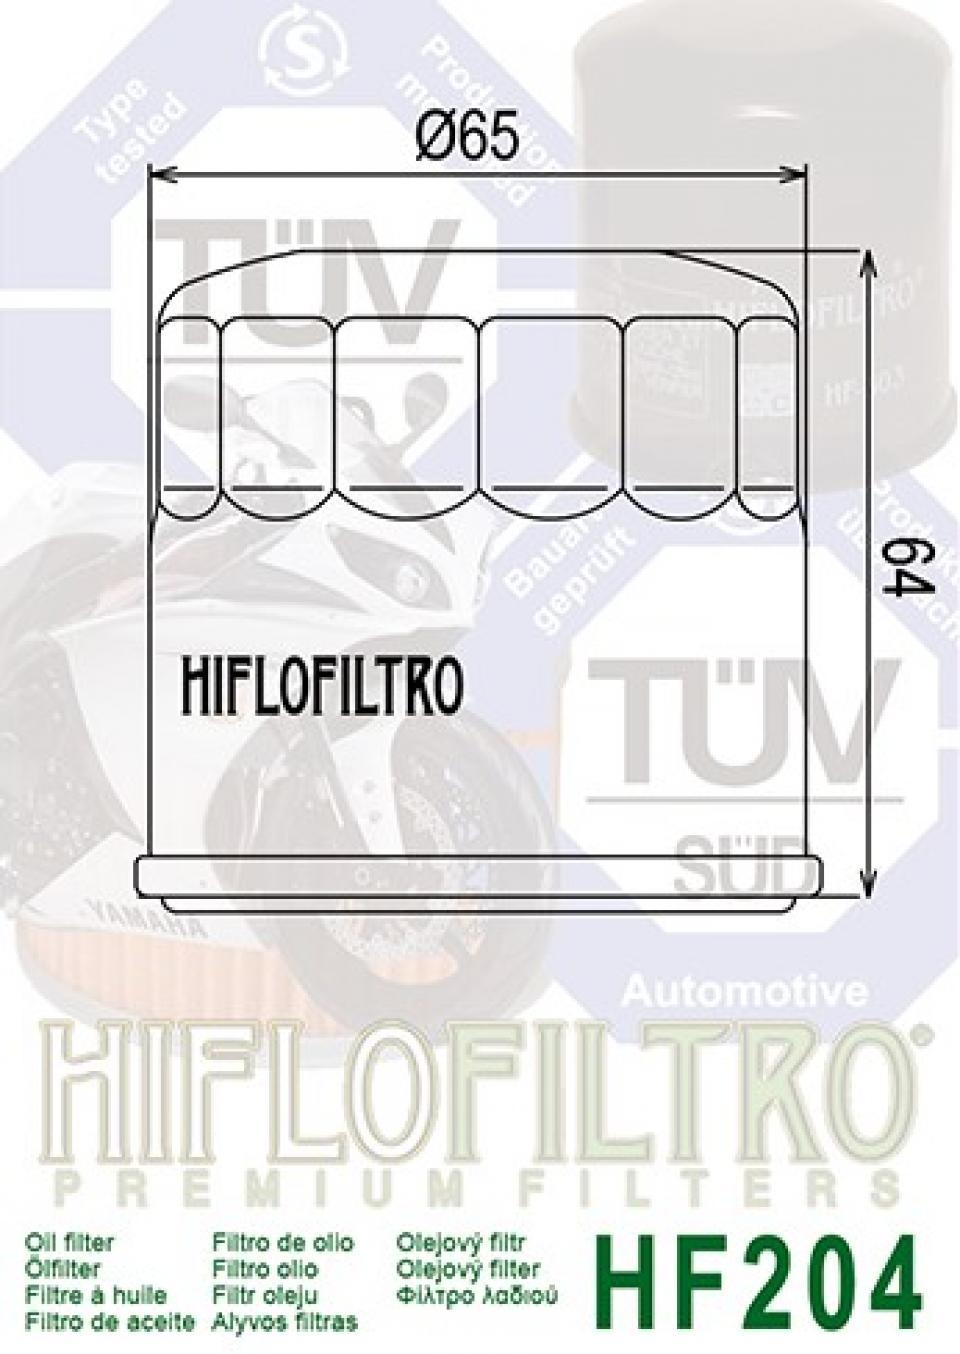 Filtre à huile Hiflofiltro pour Moto Triumph 865 Bonneville 2007 à 2015 HF204 Neuf